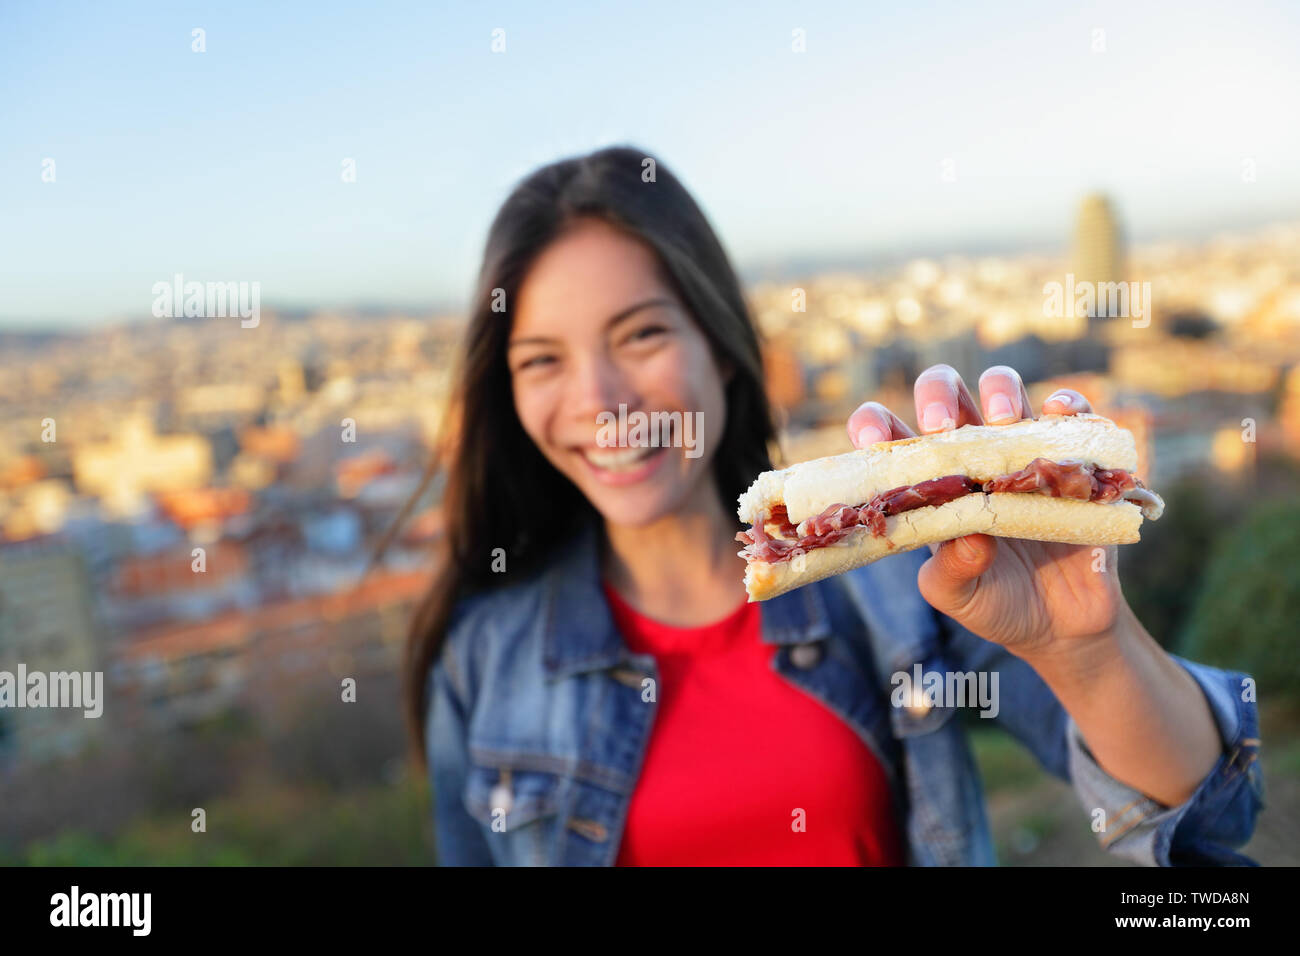 Jamon Iberico Sandwich. Donna di mangiare a Barcellona, Spagna mostra tradizionale cibo spagnolo, indurito il prosciutto Serrano. Focus su bocadillo, lo skyline di Barcellona in background. Foto Stock